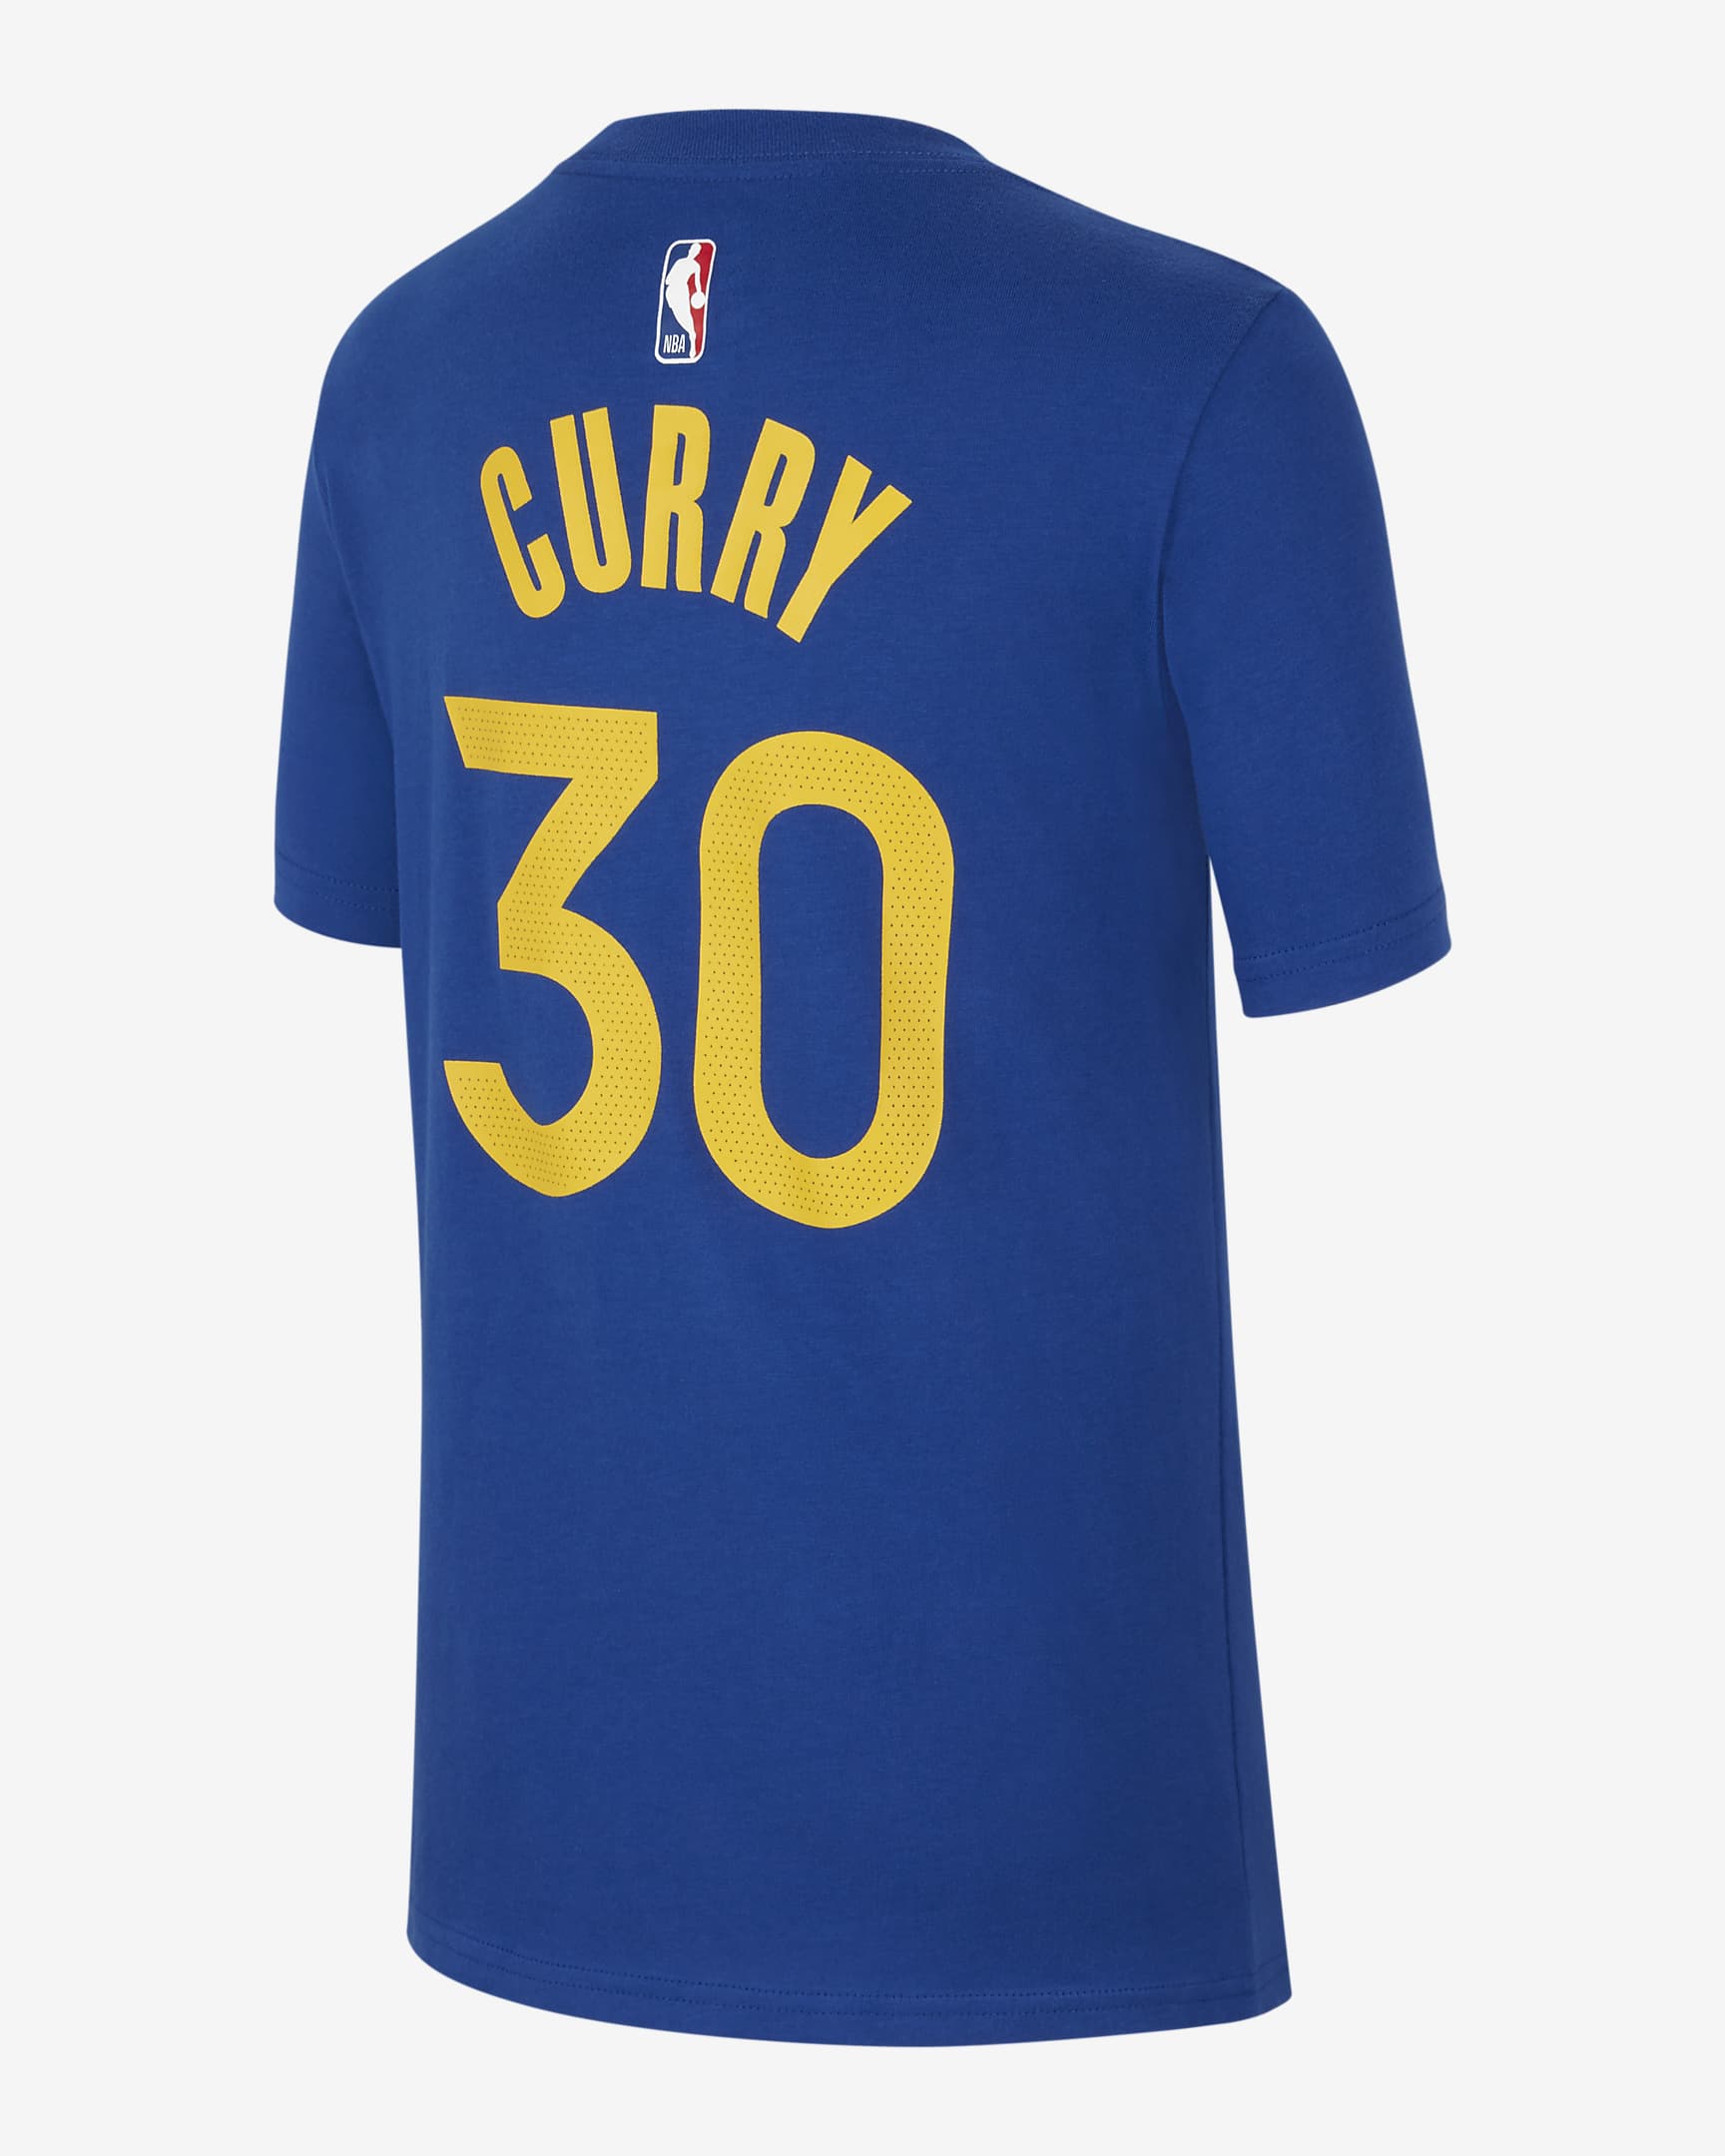 Golden State Warriors Older Kids' Nike NBA T-Shirt. Nike AT